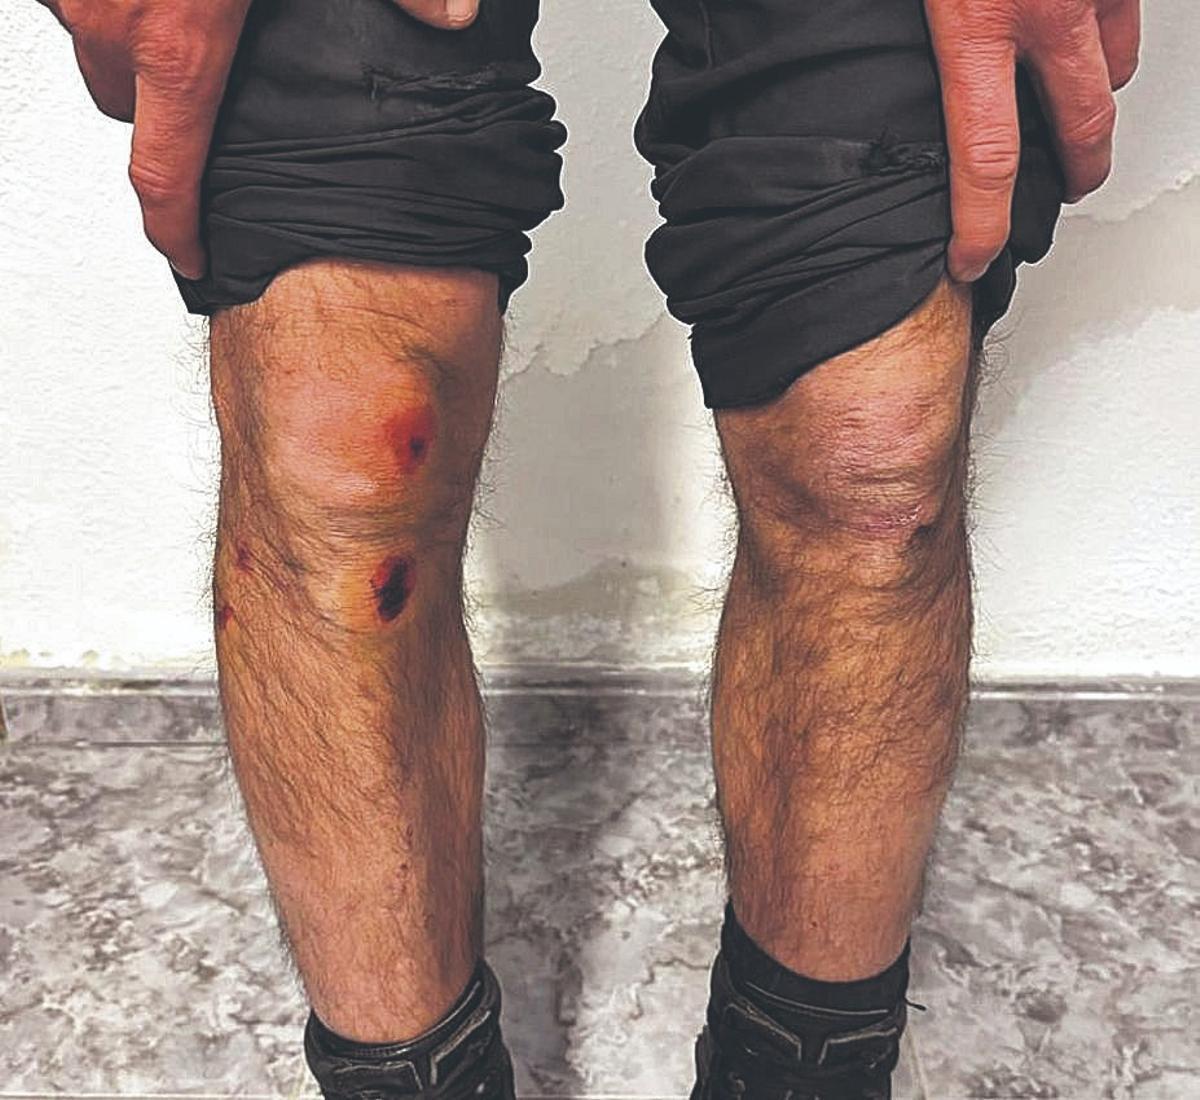 Heridas y quemaduras en las piernas del guardia civil arrollado.